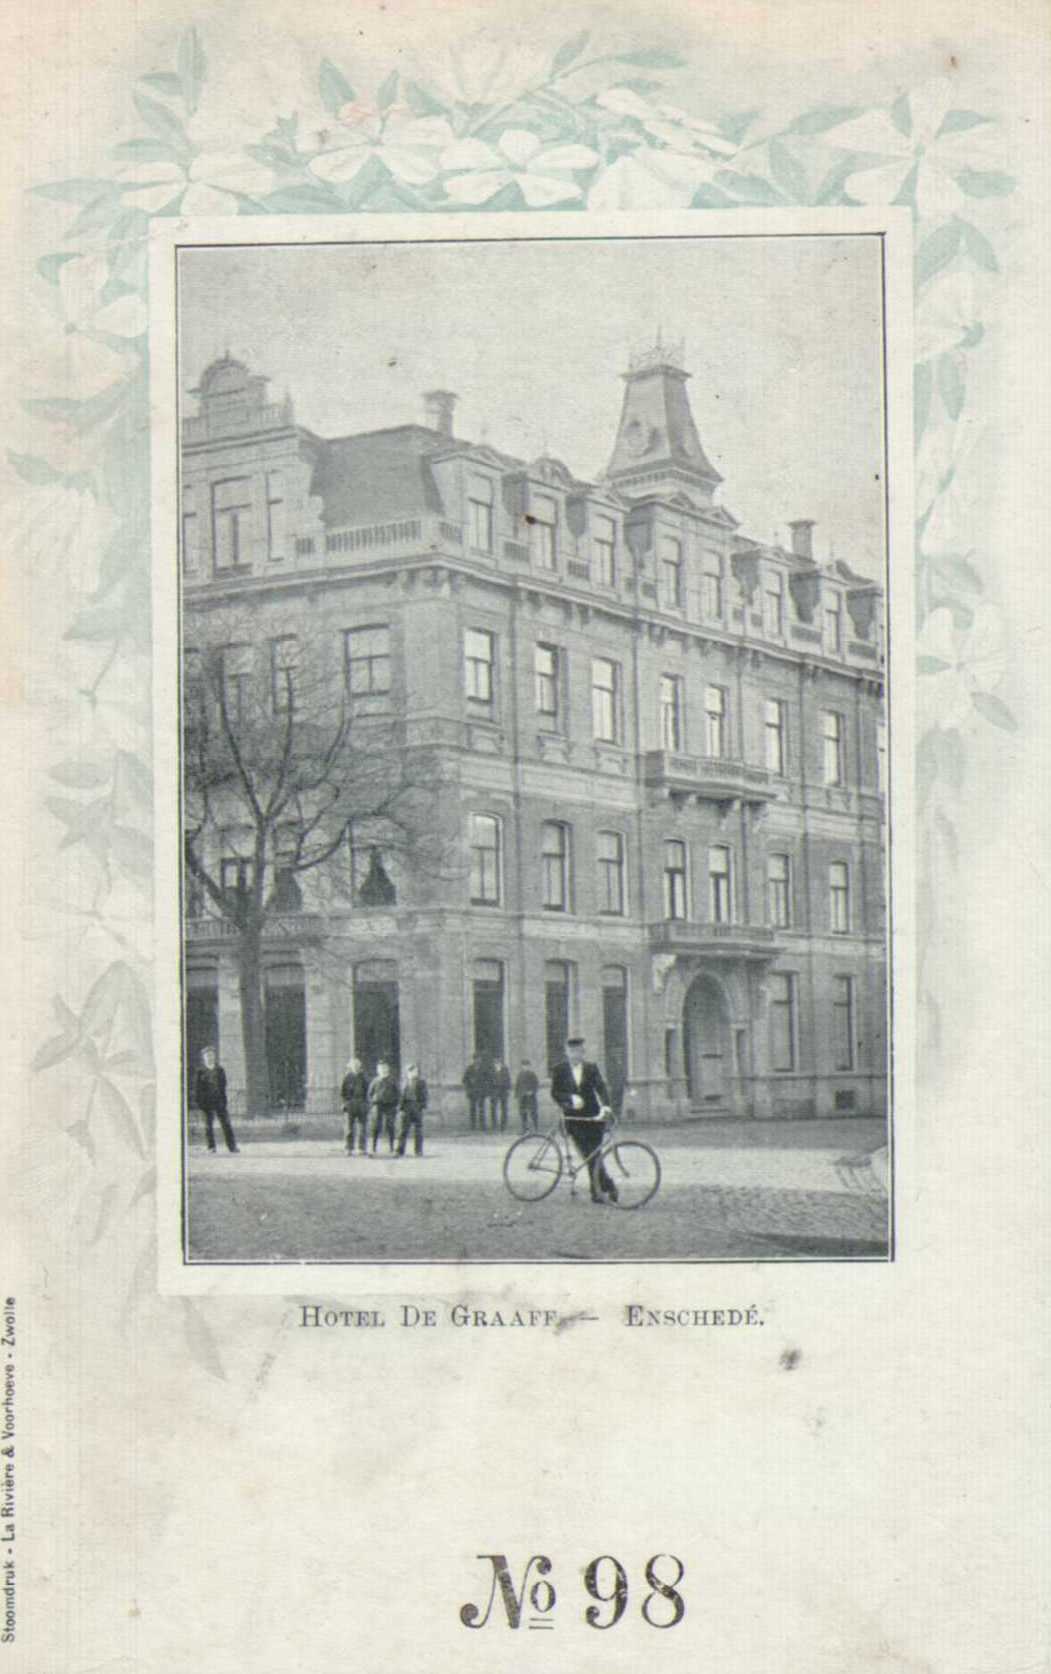 Hotel-de-graaff-1905.jpg